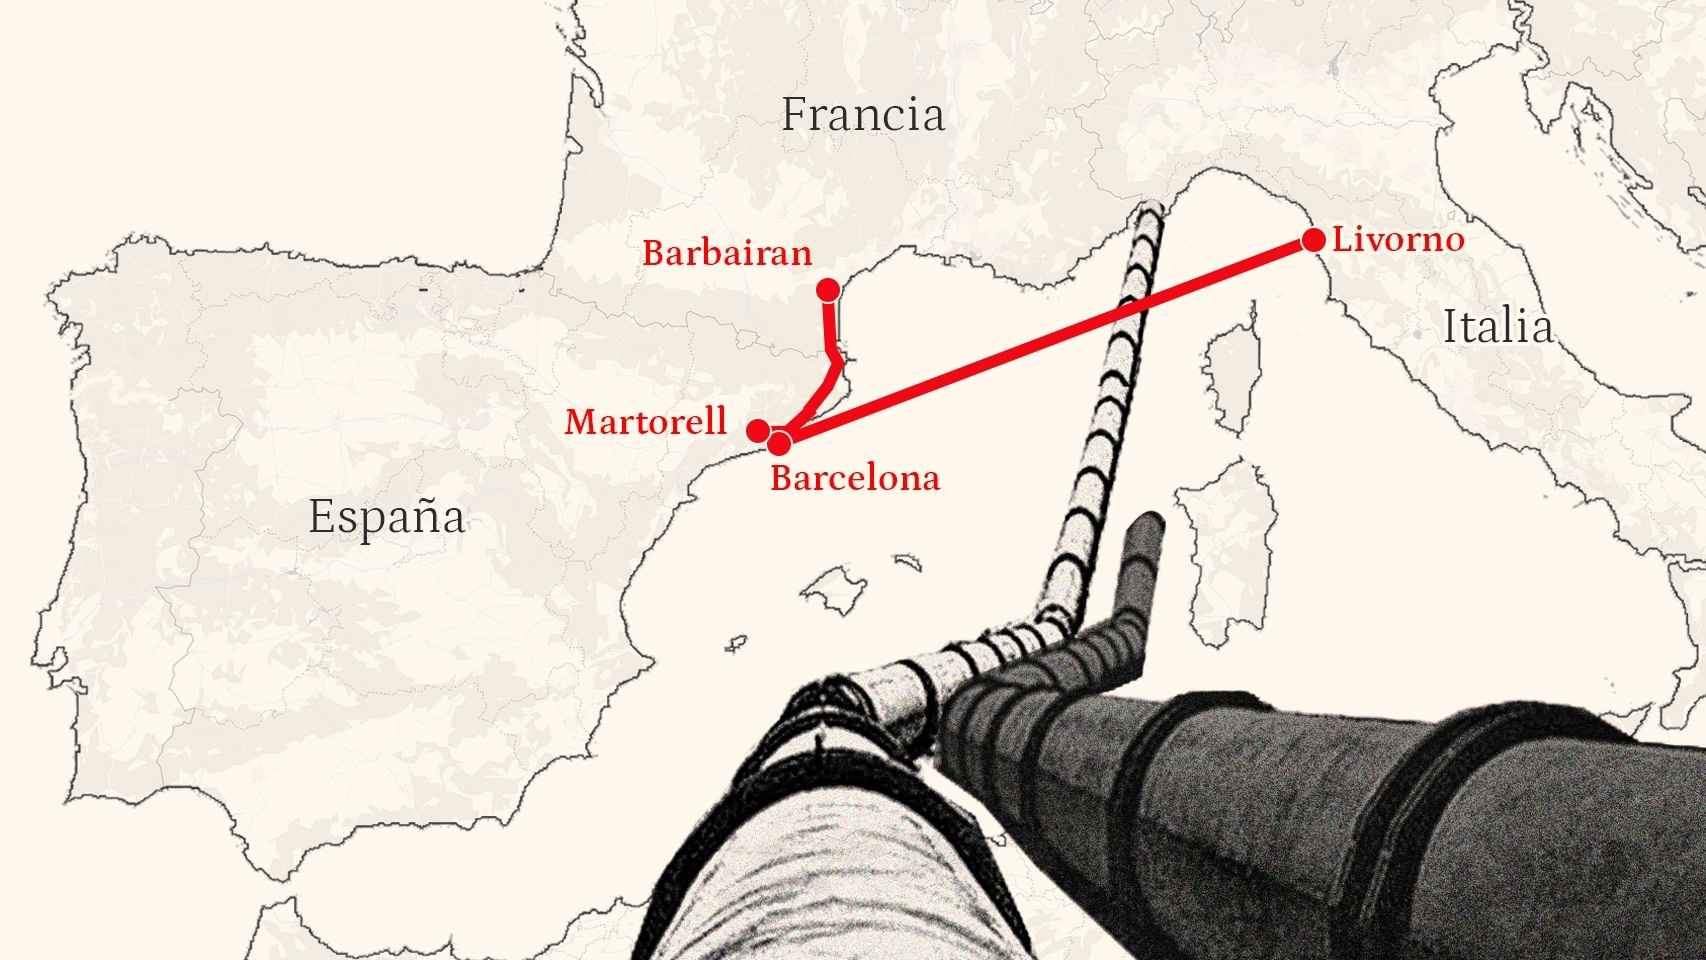 Áreas por las que se planean el gasoducto BarMar y el proyecto a Livorno, que uniría España e Italia.